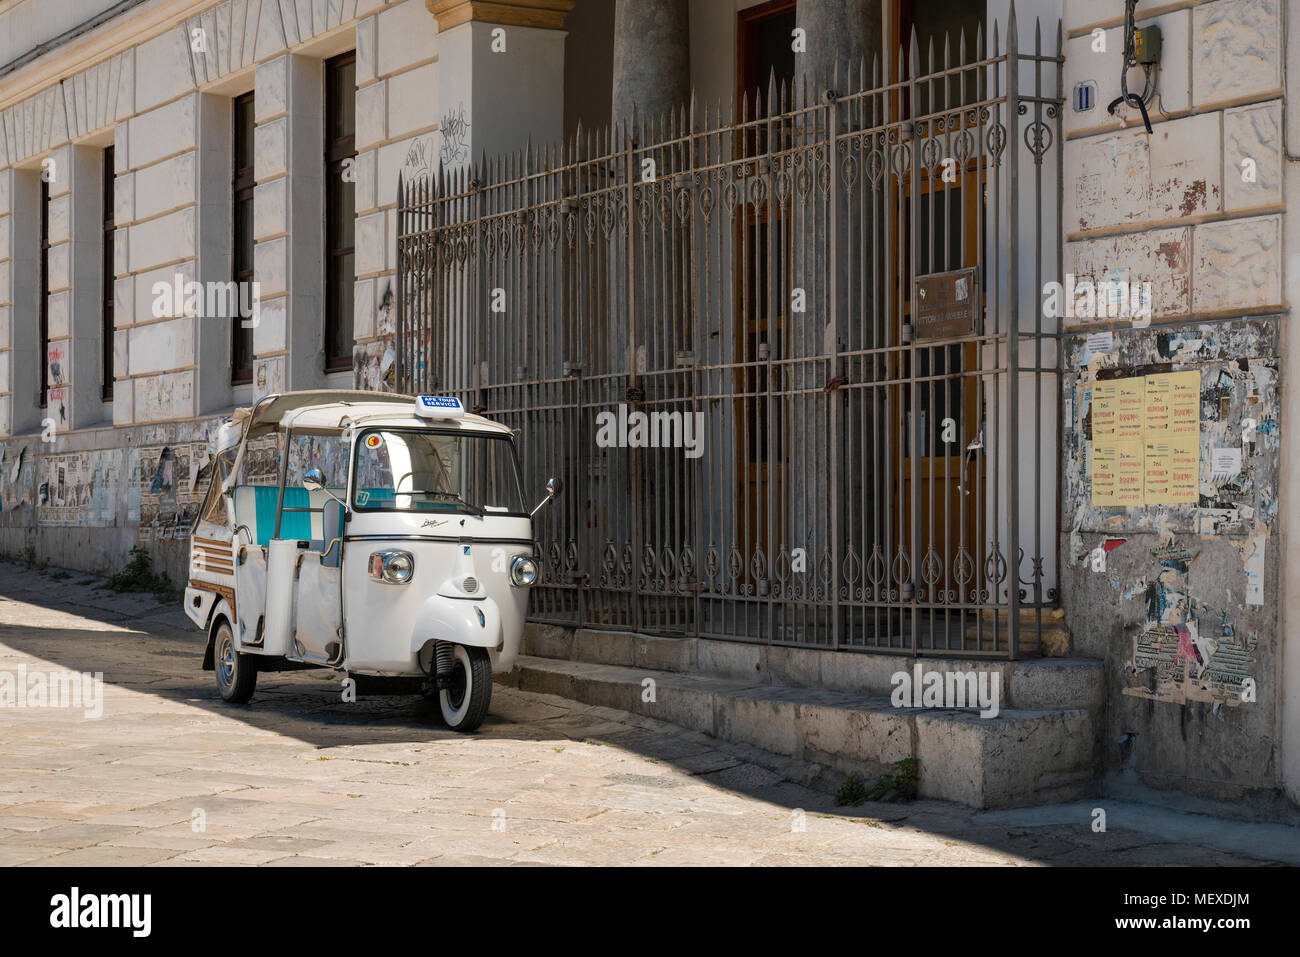 Un Piaggio Ape Calessino tour blanche taxi stationné à l'extérieur d'un bâtiment secondaire à Palerme, Sicile, Italie. Le bâtiment est le "Liceo Classico Vittorio Banque D'Images